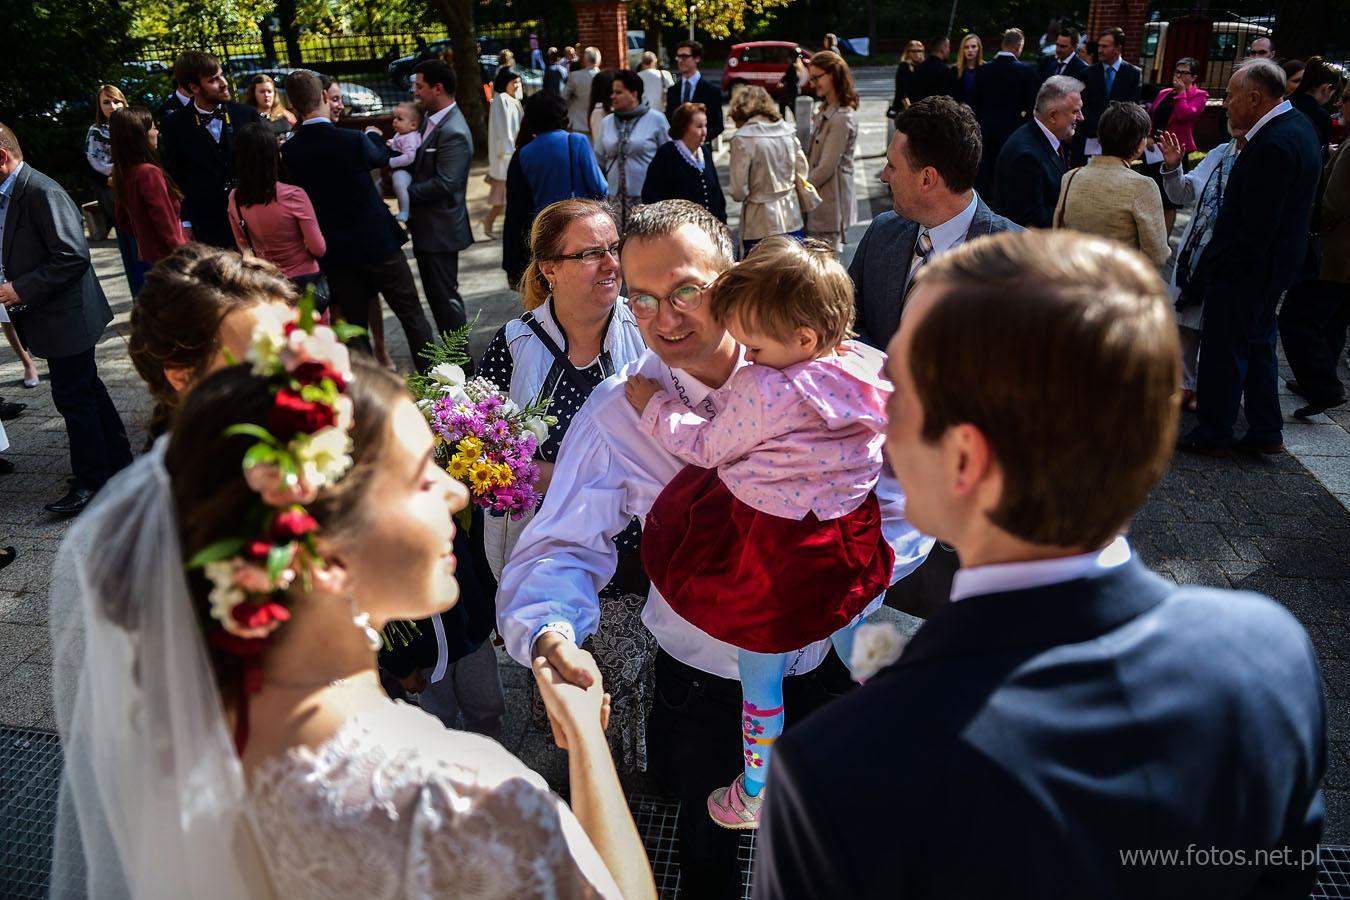 Unikalna ceremonia ślub w rycie trydenckim